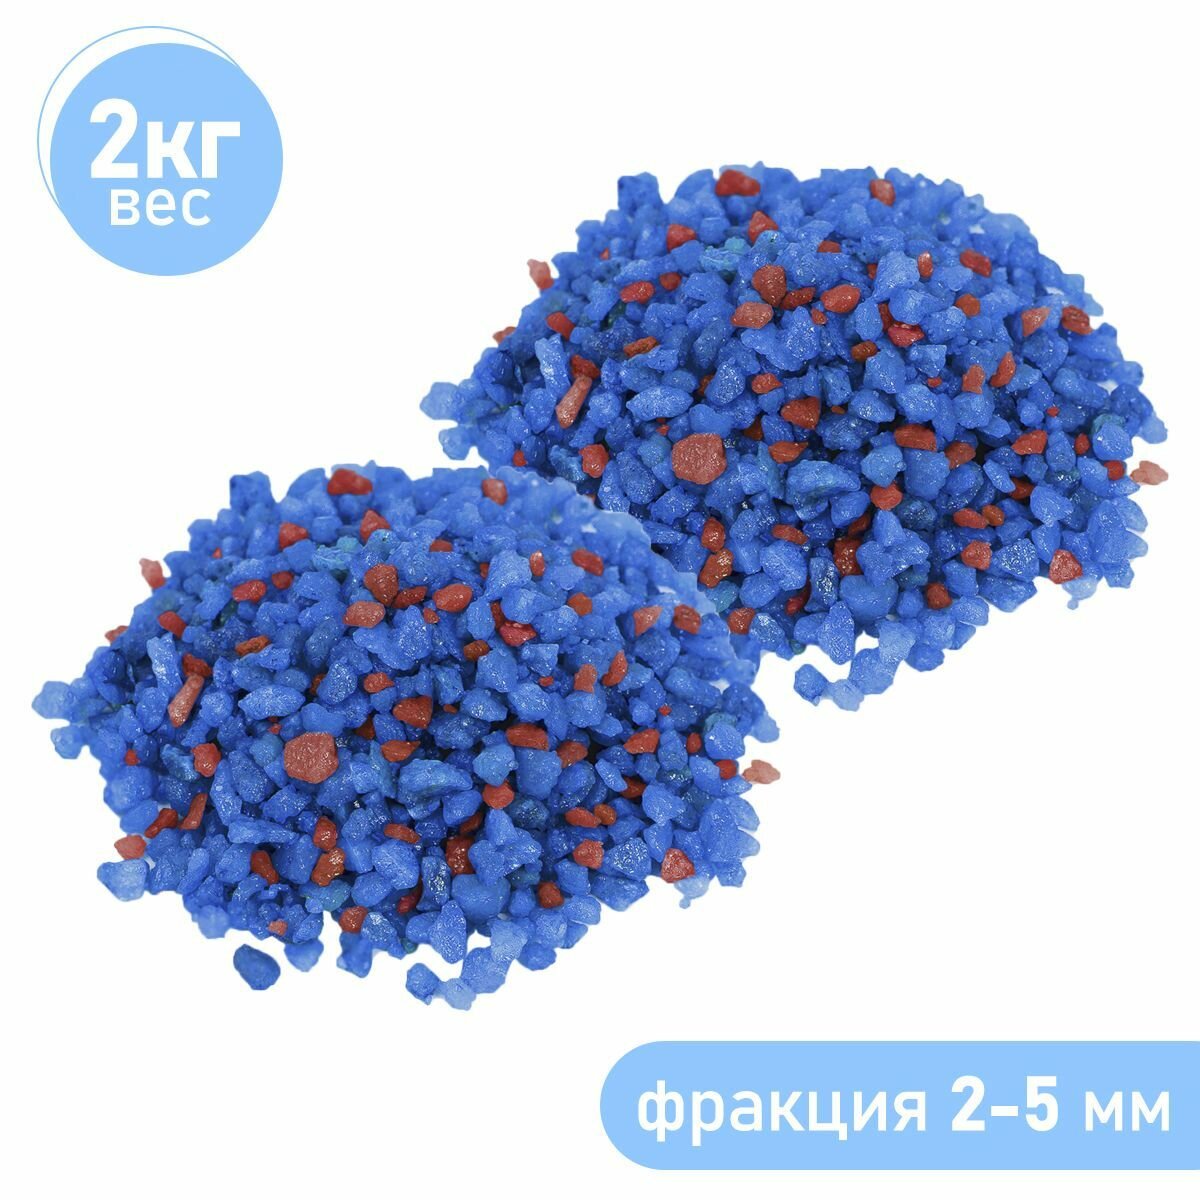 Натуральный грунт для кактусов, суккулентов и растений, Zoo One, природный материал, "Синий+бордо", (фракция 2-5 мм) набор 2 шт по 1 кг, GR15-0005-2